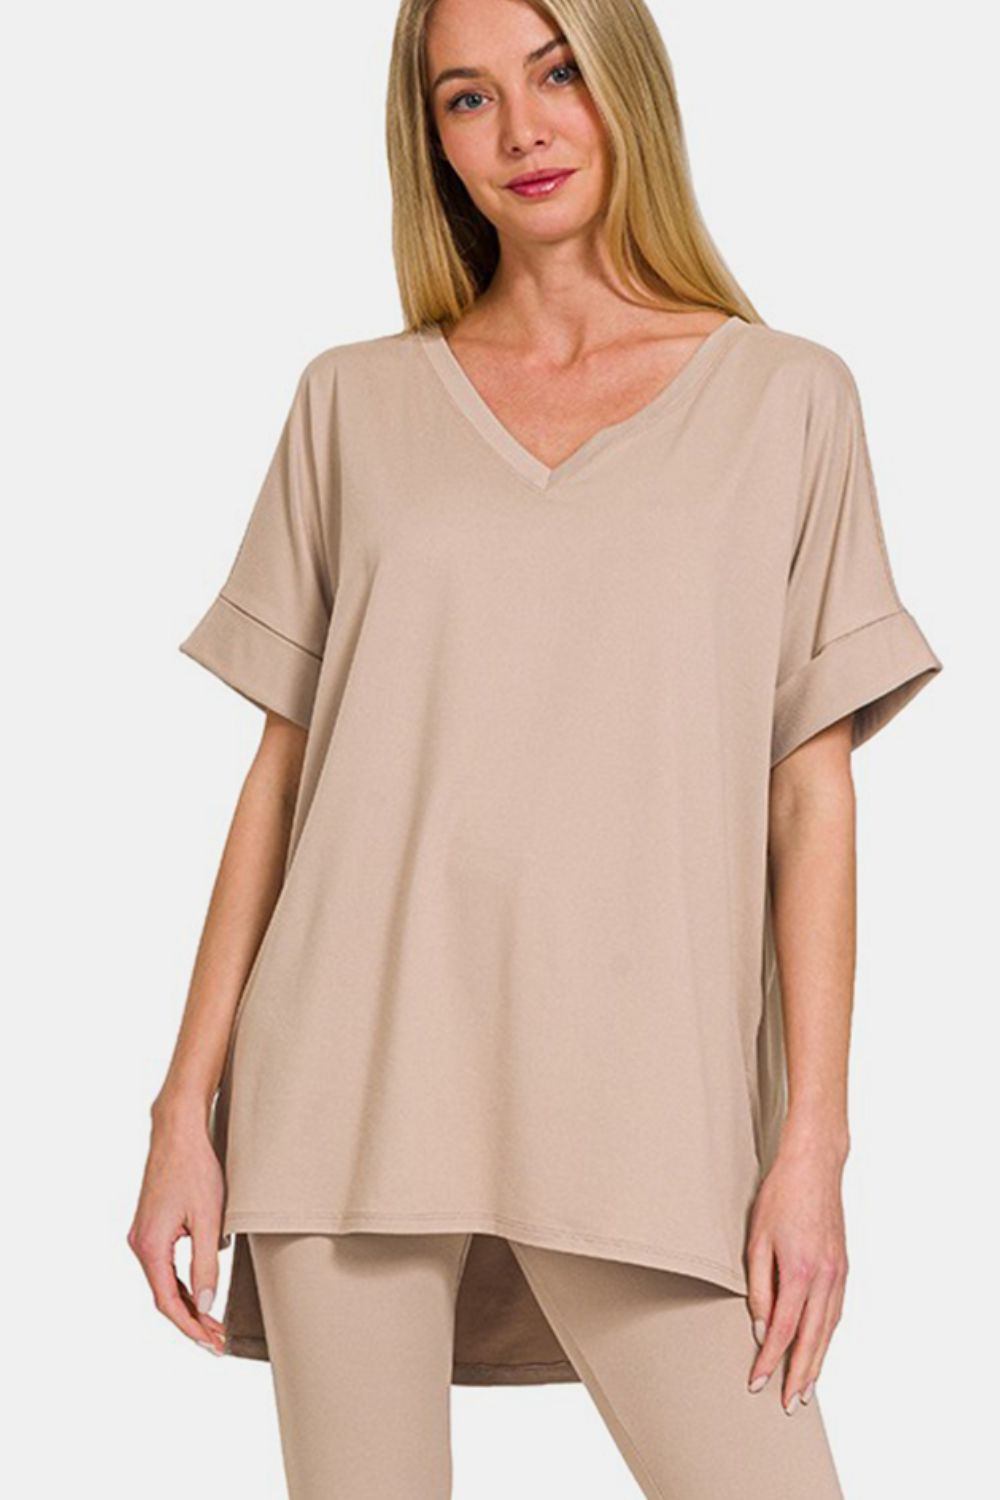 Zenana Light Mocha V-Neck Rolled Short Sleeve T-Shirt and Leggings Lounge Set Trendsi